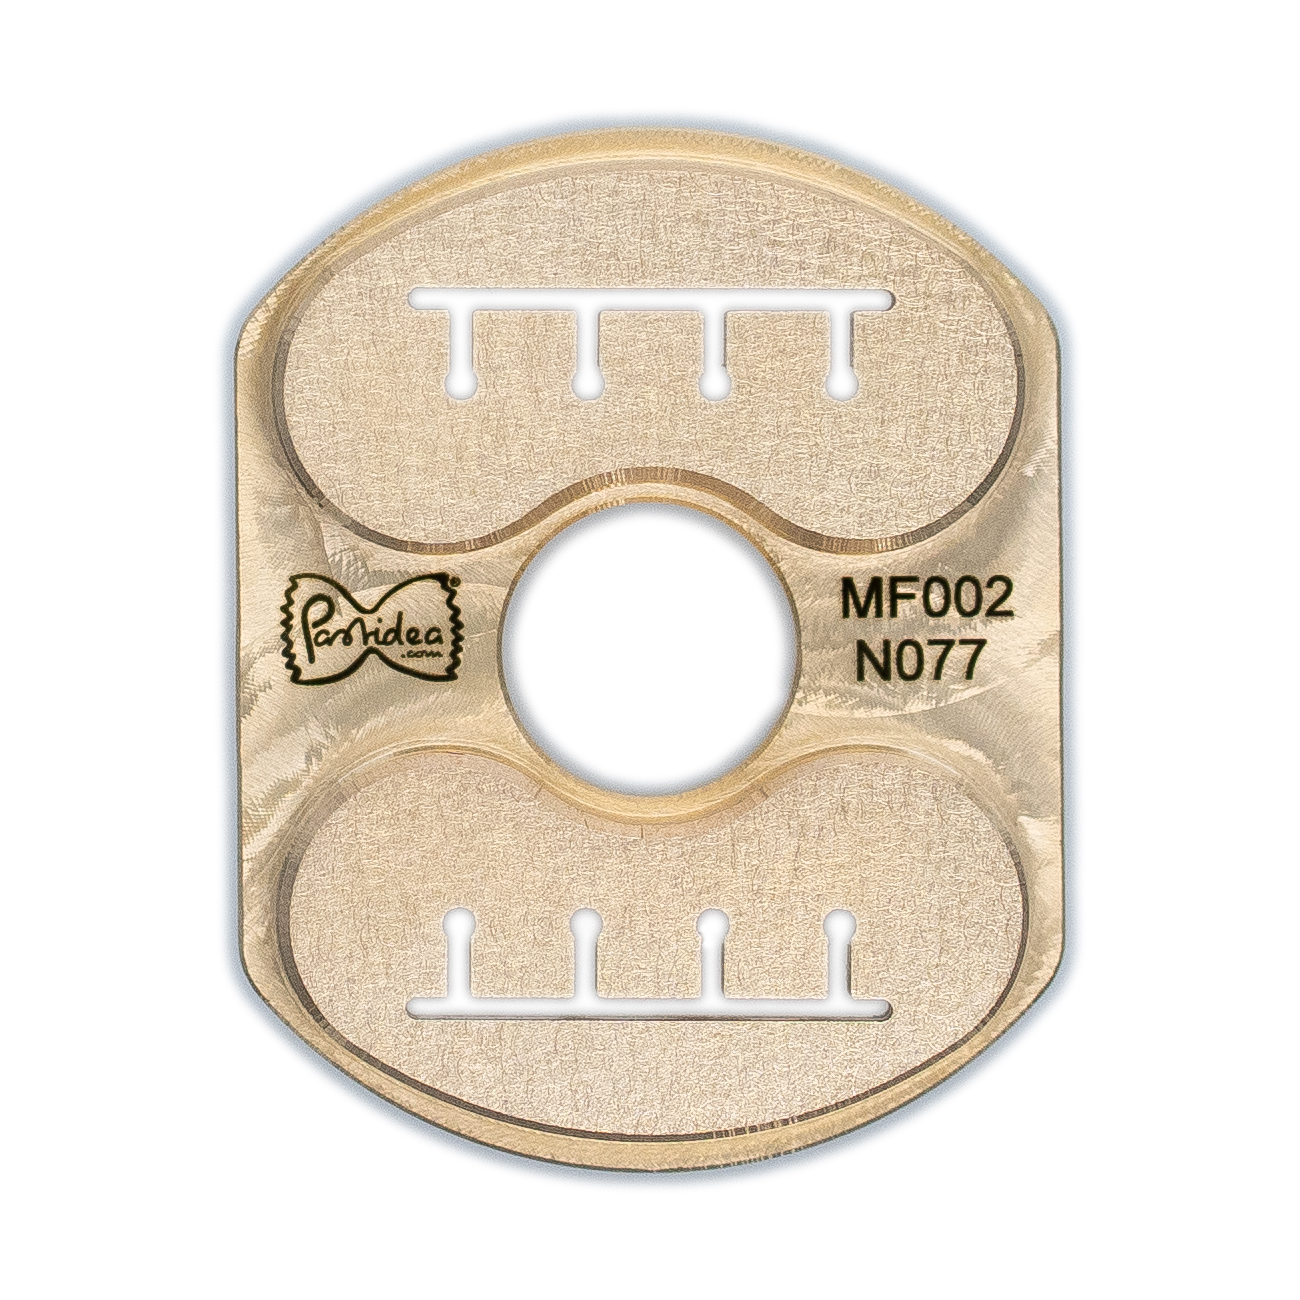 inserto de pasta en bronce radiadores a4 23mm para philips avance / serie 7000 (se requiere soporte de inserto vertical)